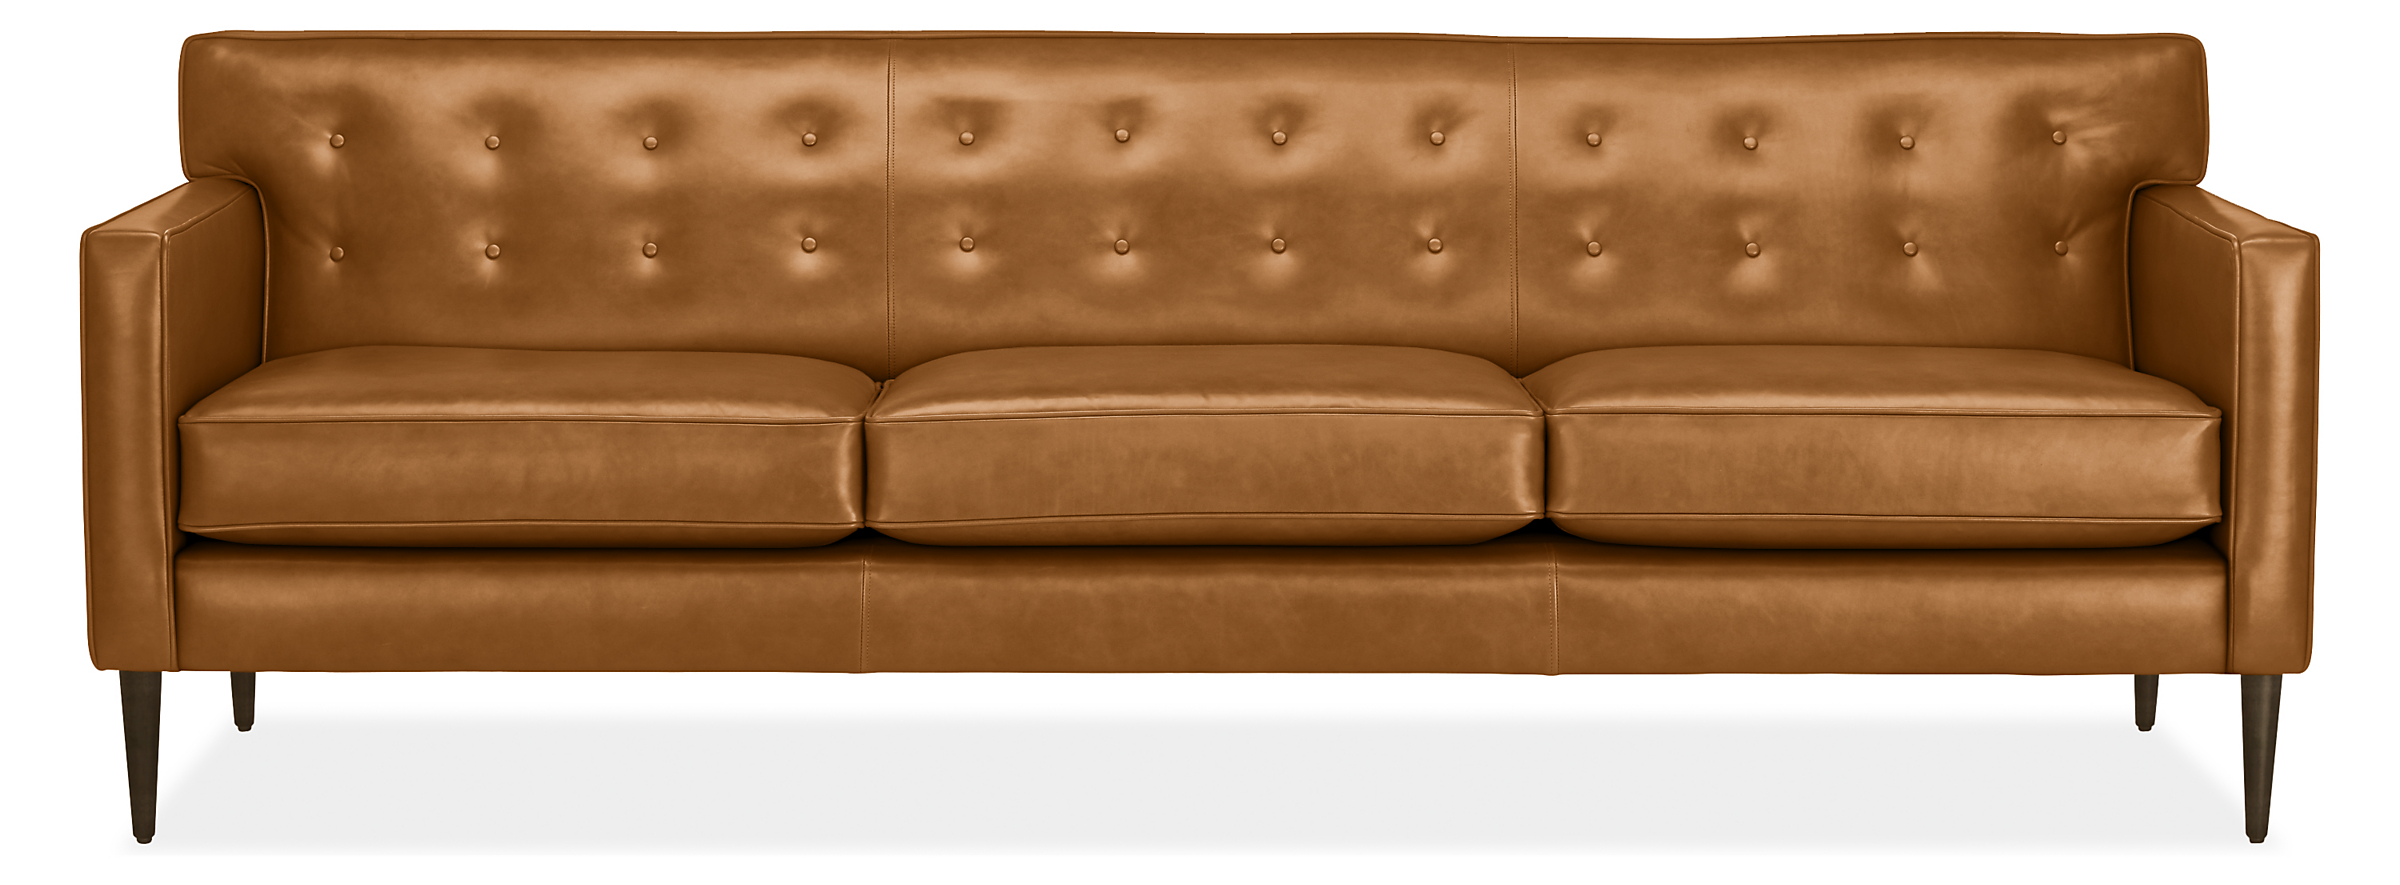 Holmes Leather Sofas